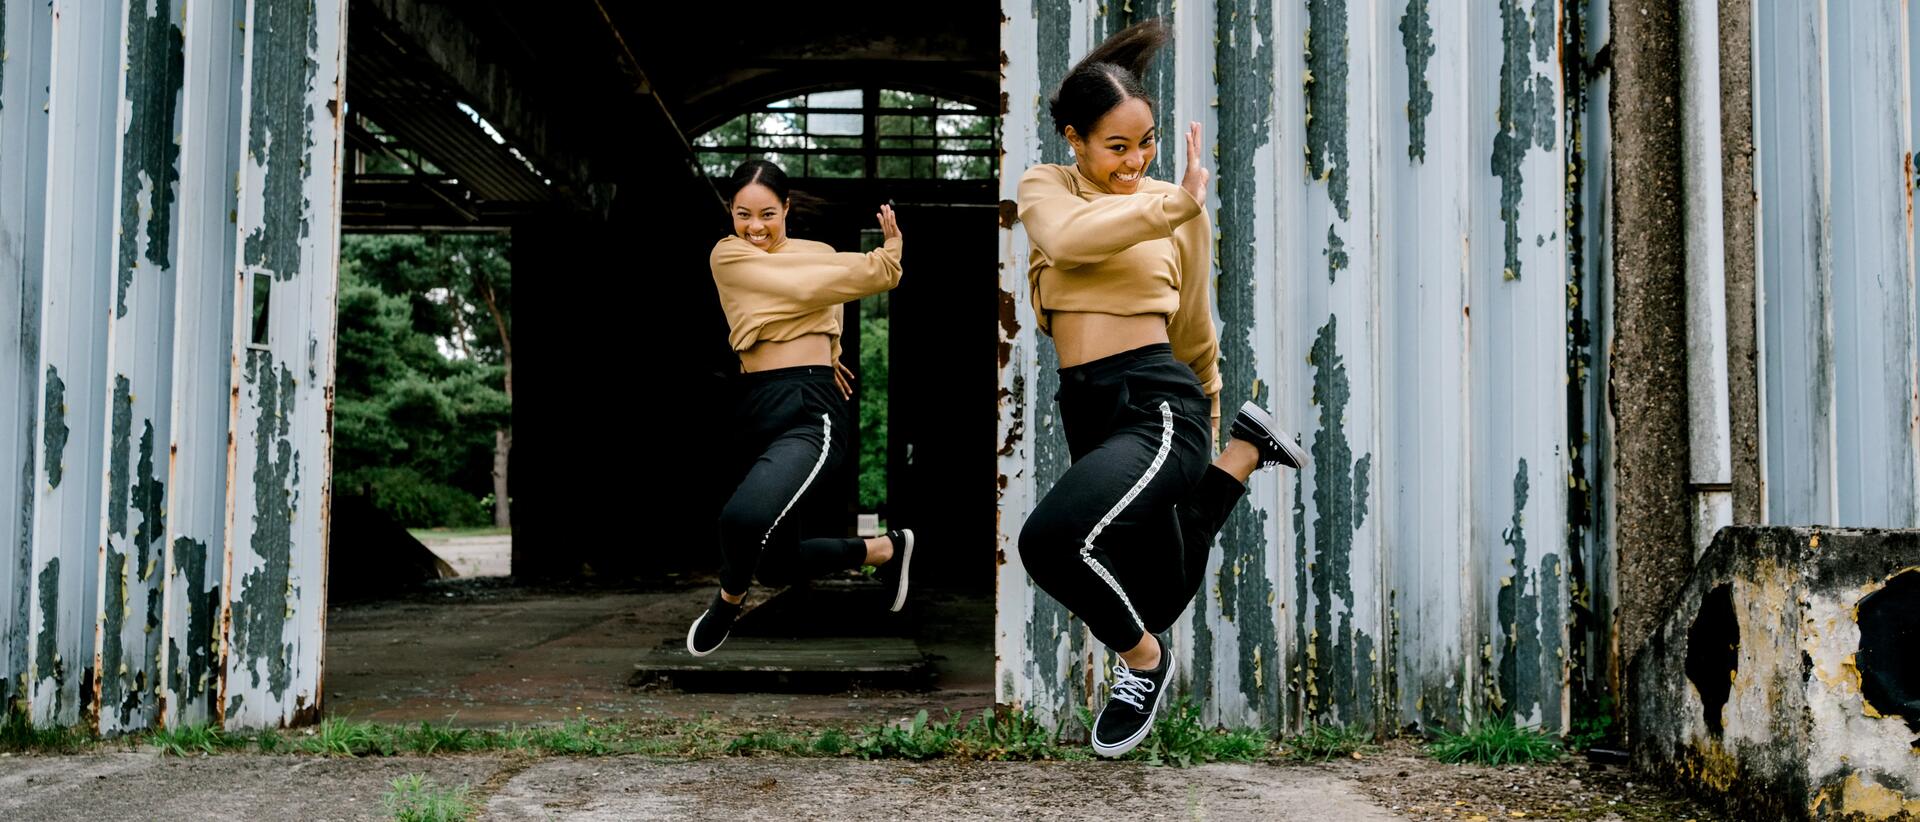 kobiety w strojach sportowych wykonują figurę taneczną w powietrzu